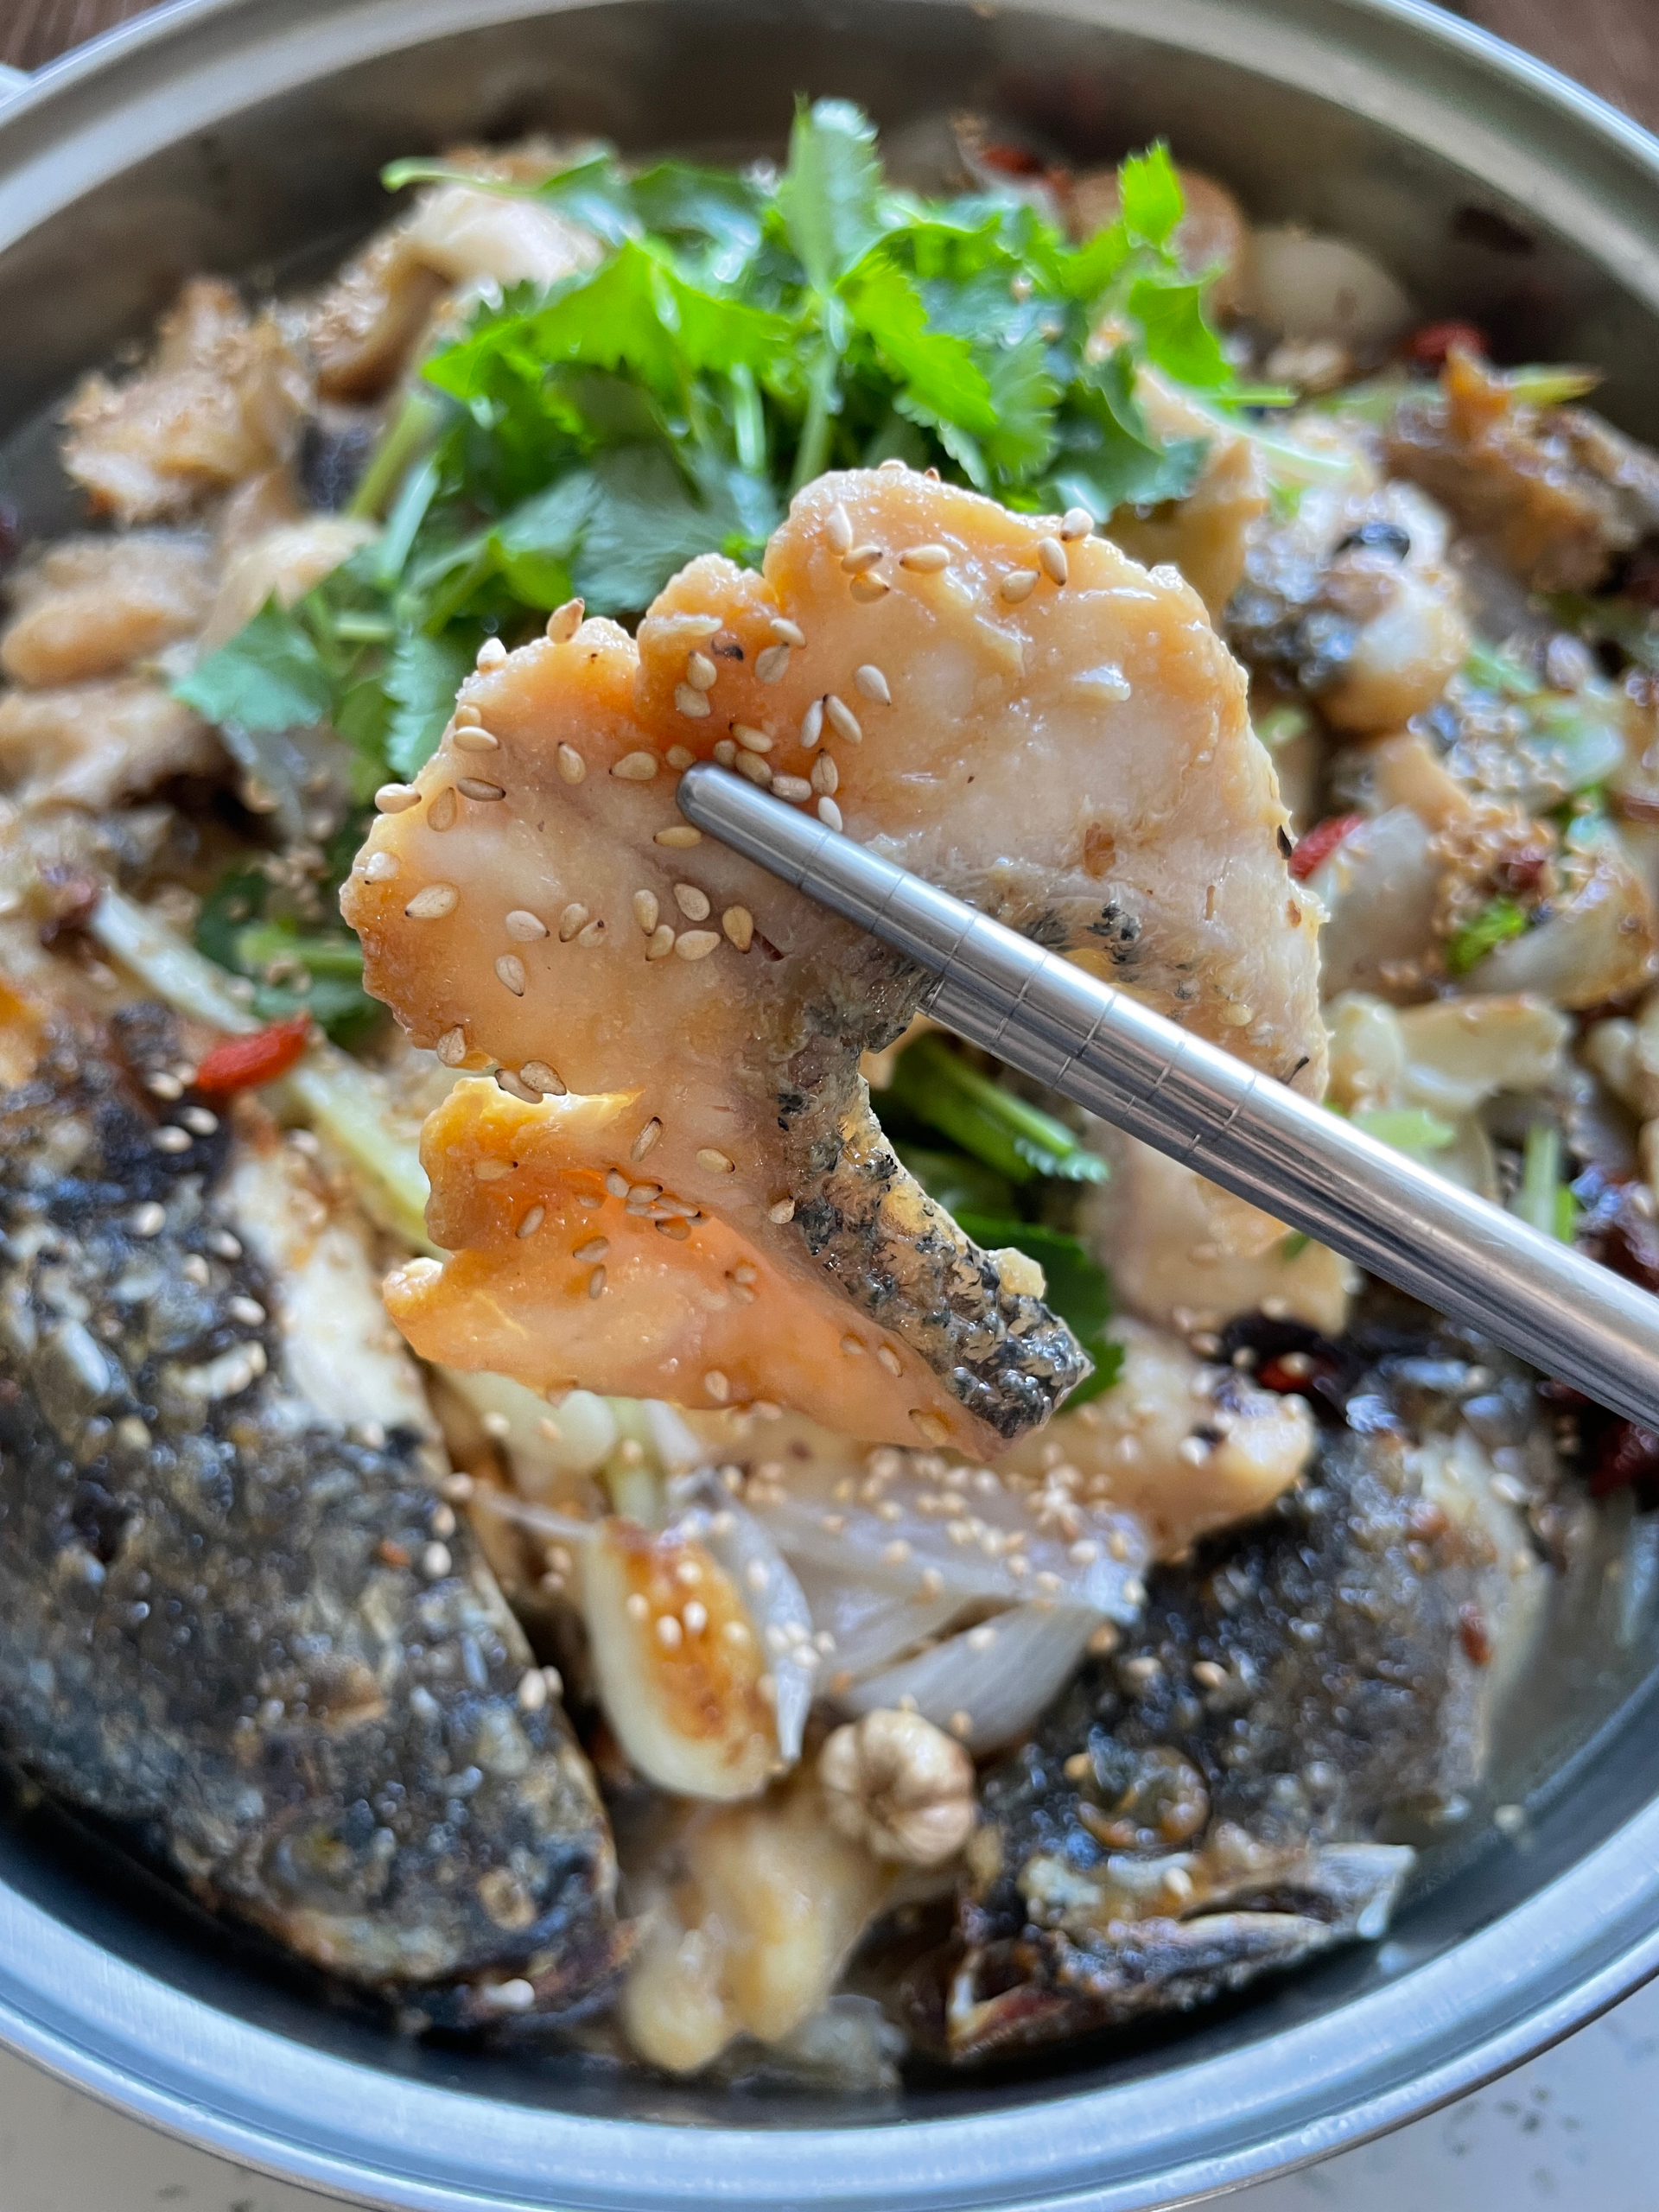 石锅鱼